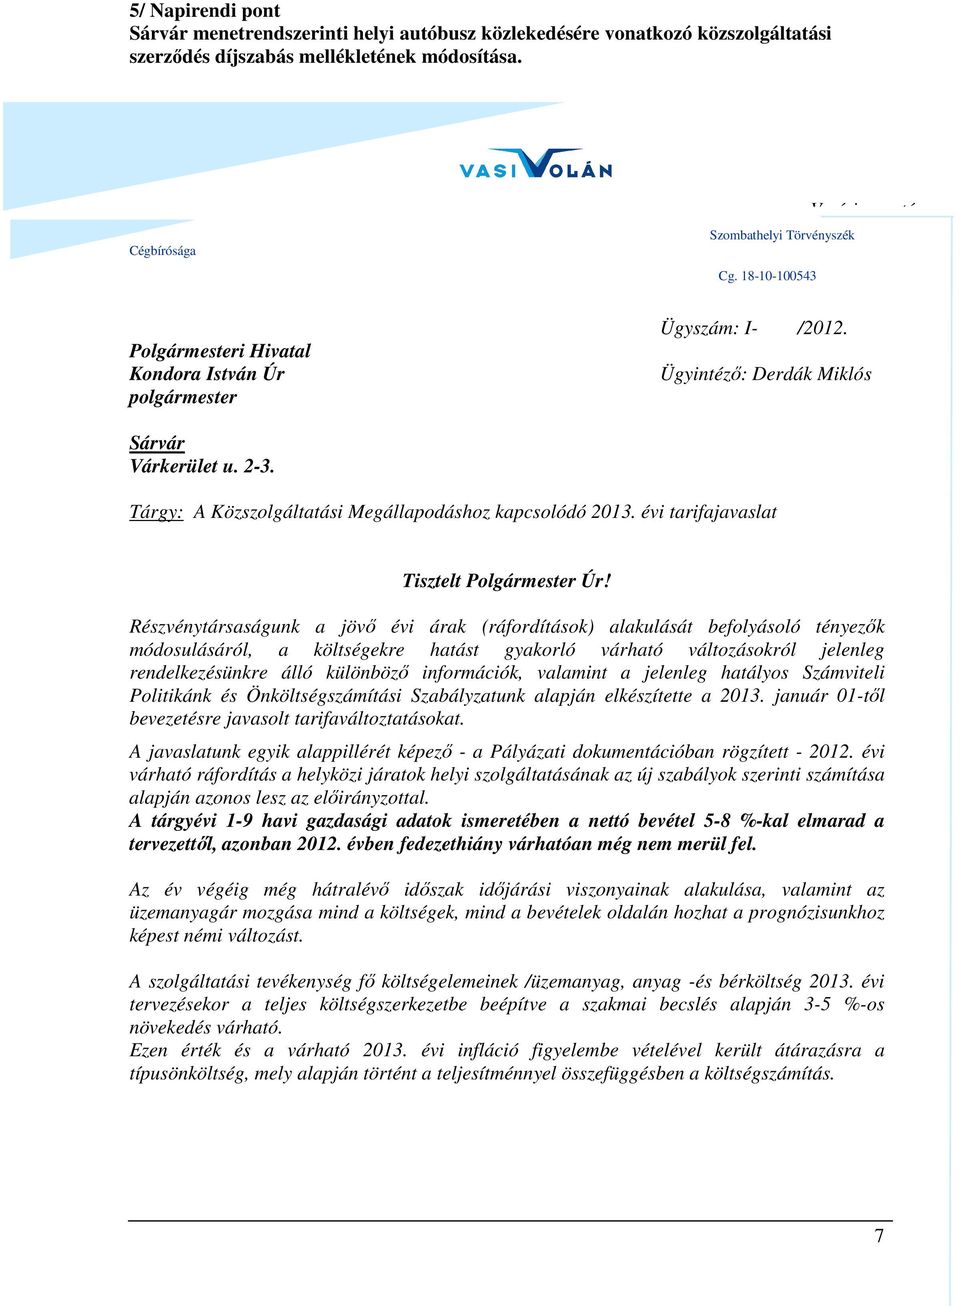 Tárgy: A Közszolgáltatási Megállapodáshoz kapcsolódó 2013. évi tarifajavaslat Tisztelt Polgármester Úr!